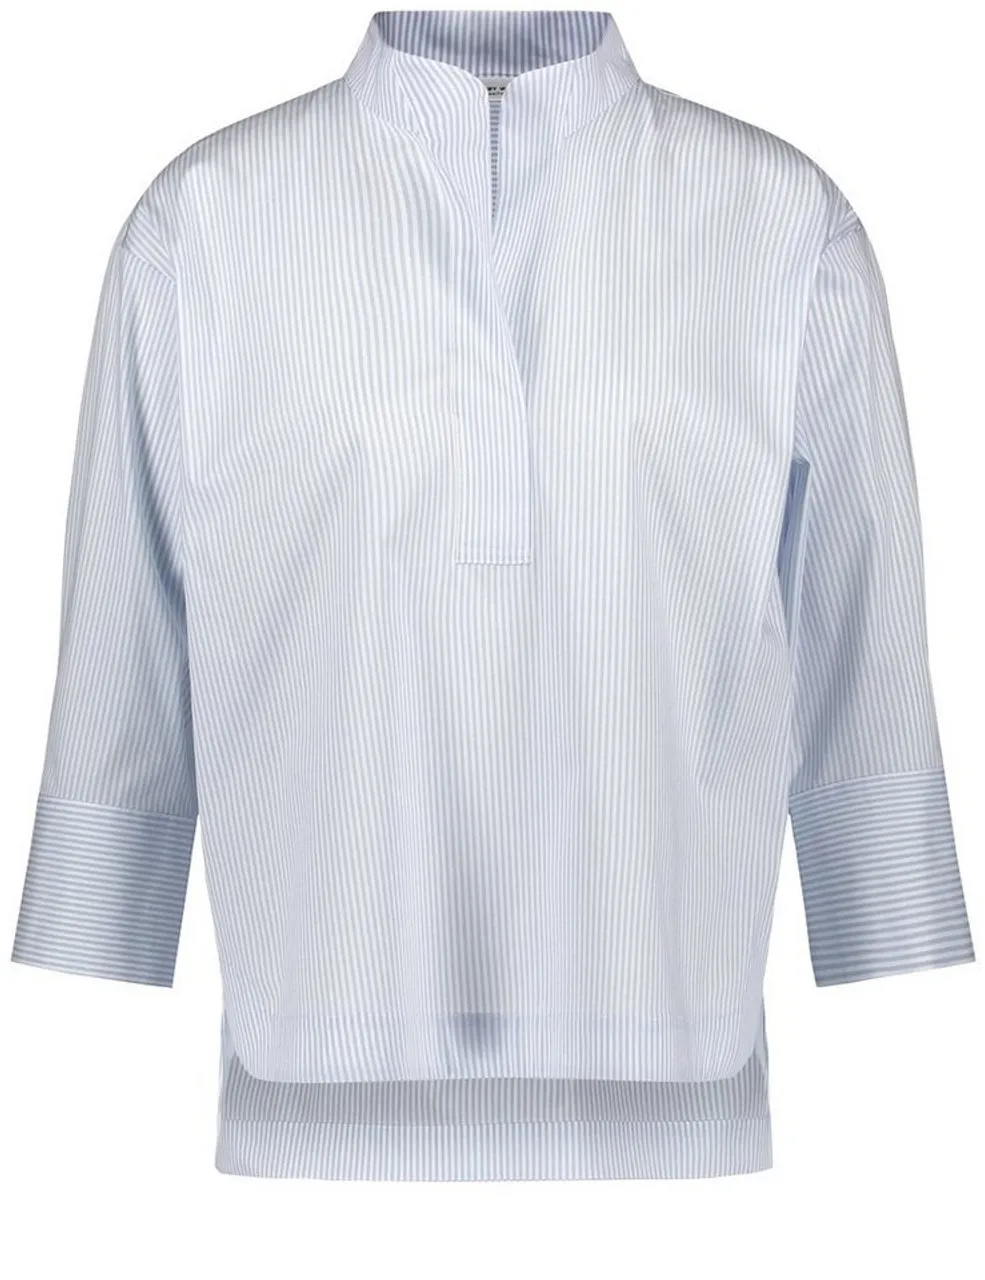 GERRY WEBER Klassische Bluse 3/4 Arm Bluse mit aufspringender Falte